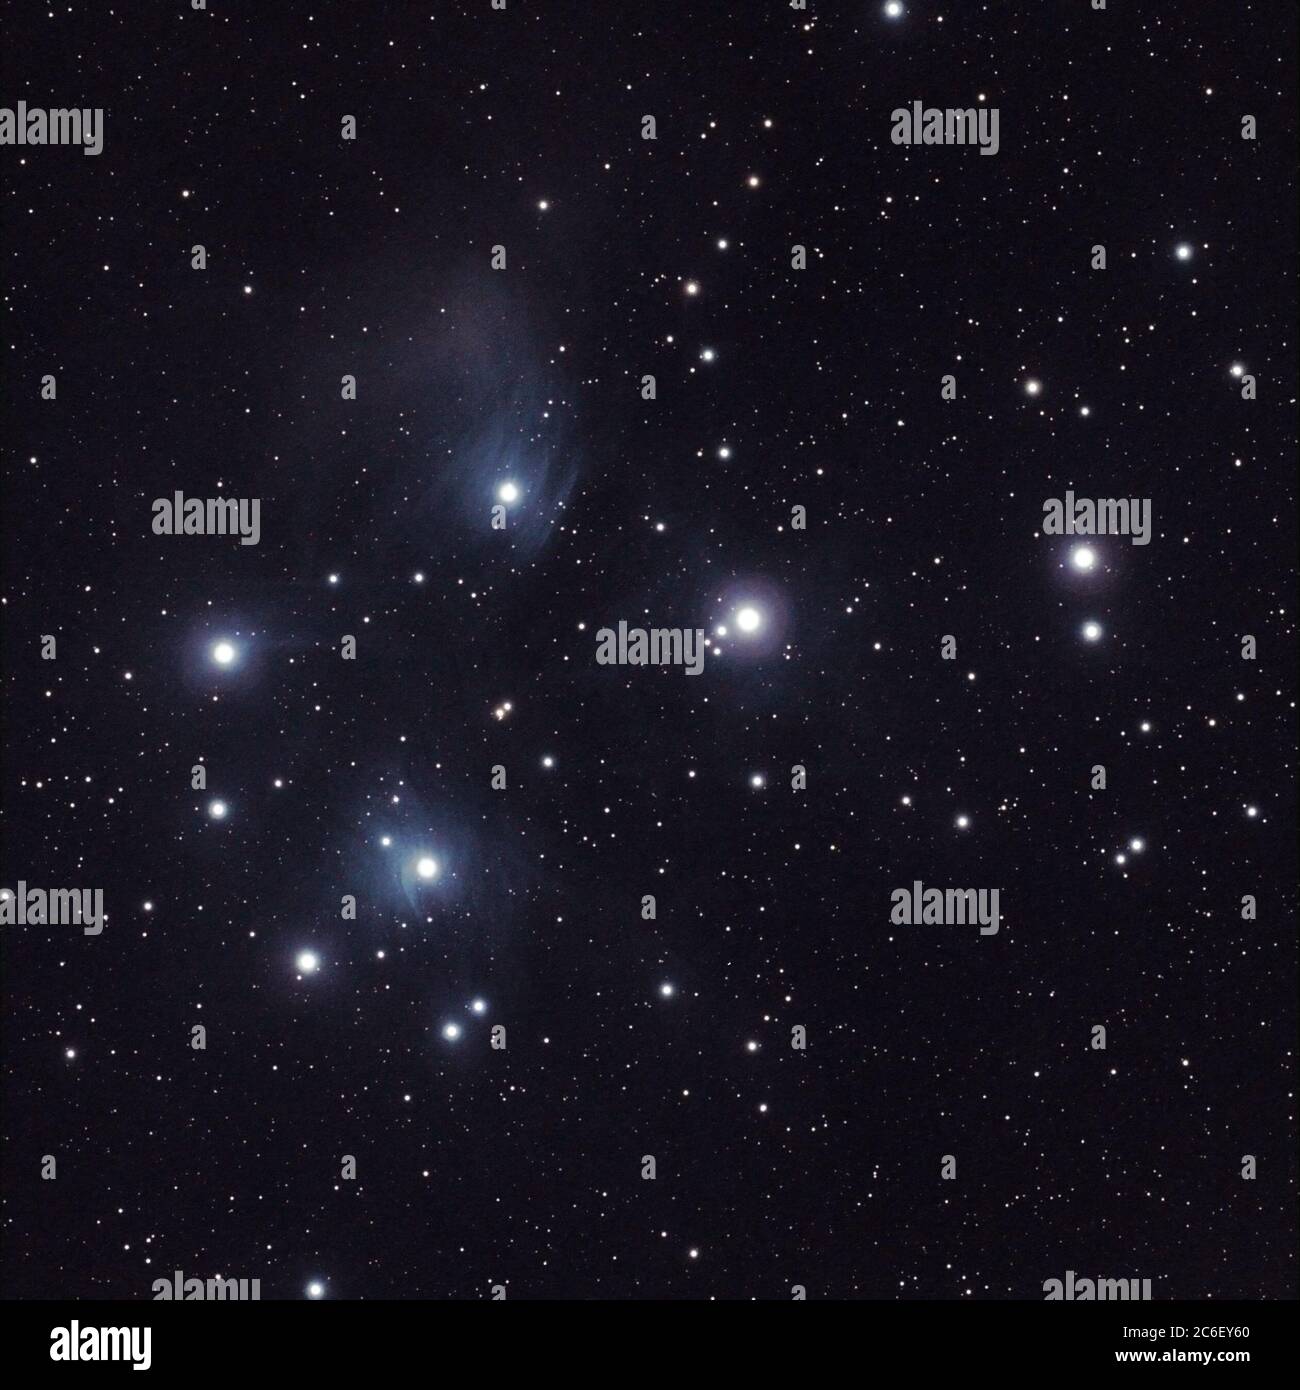 Le Pleiades, le sette Sorelle o secondo la sua designazione nel catalogo di Messier - M45 è un gruppo di stelle aperte nella costellazione di Toro. Esso Foto Stock